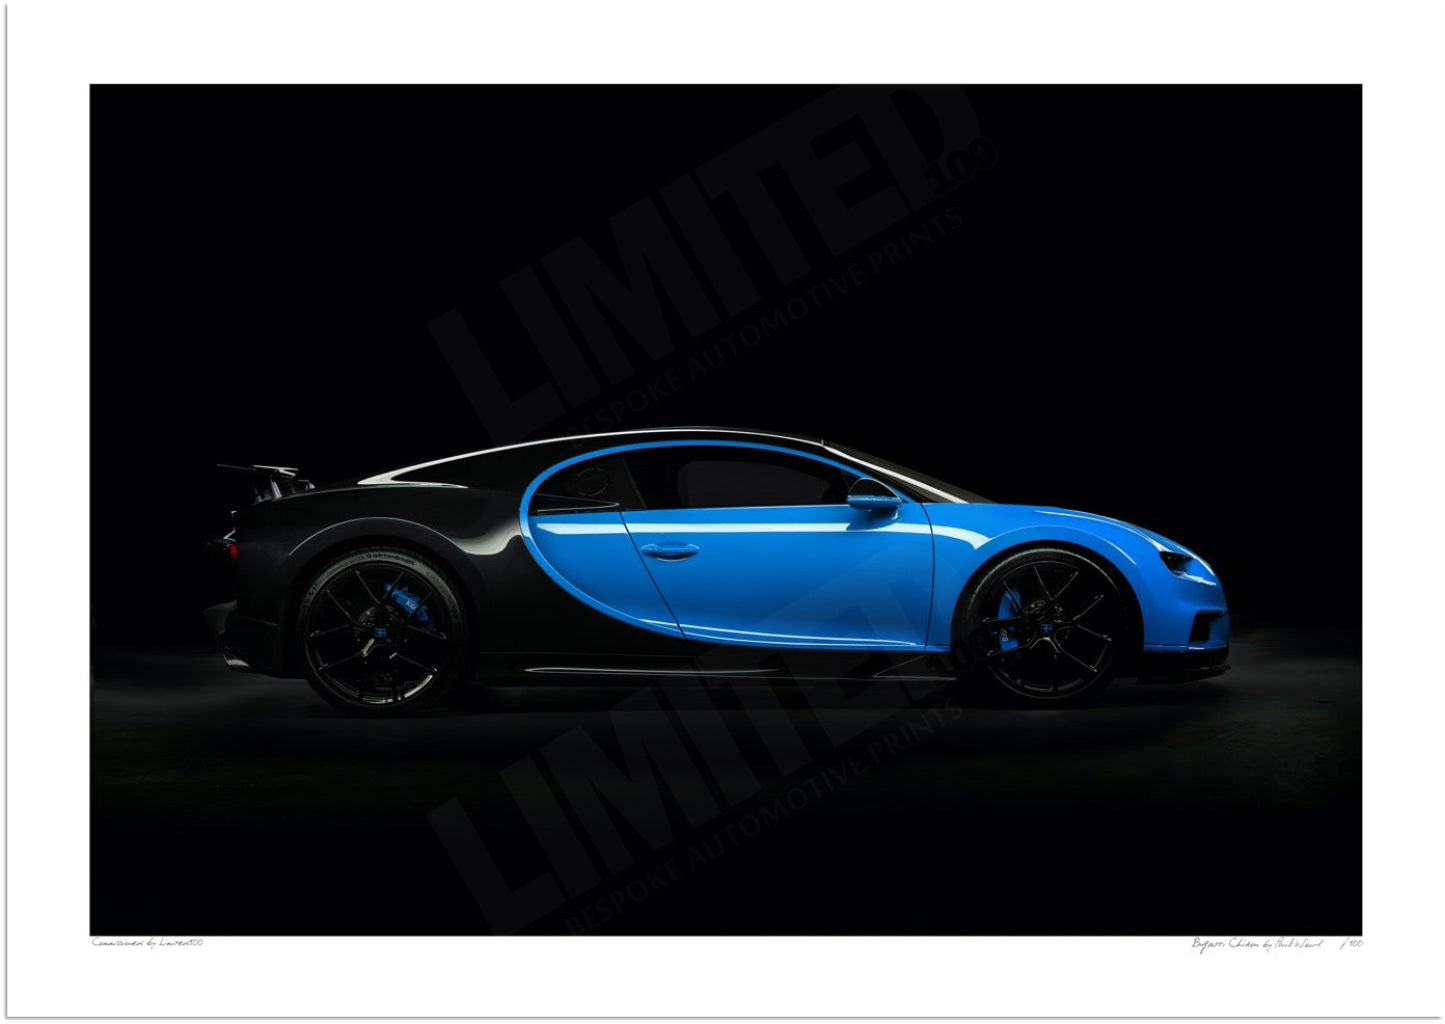 Bugatti Chiron (side profile)